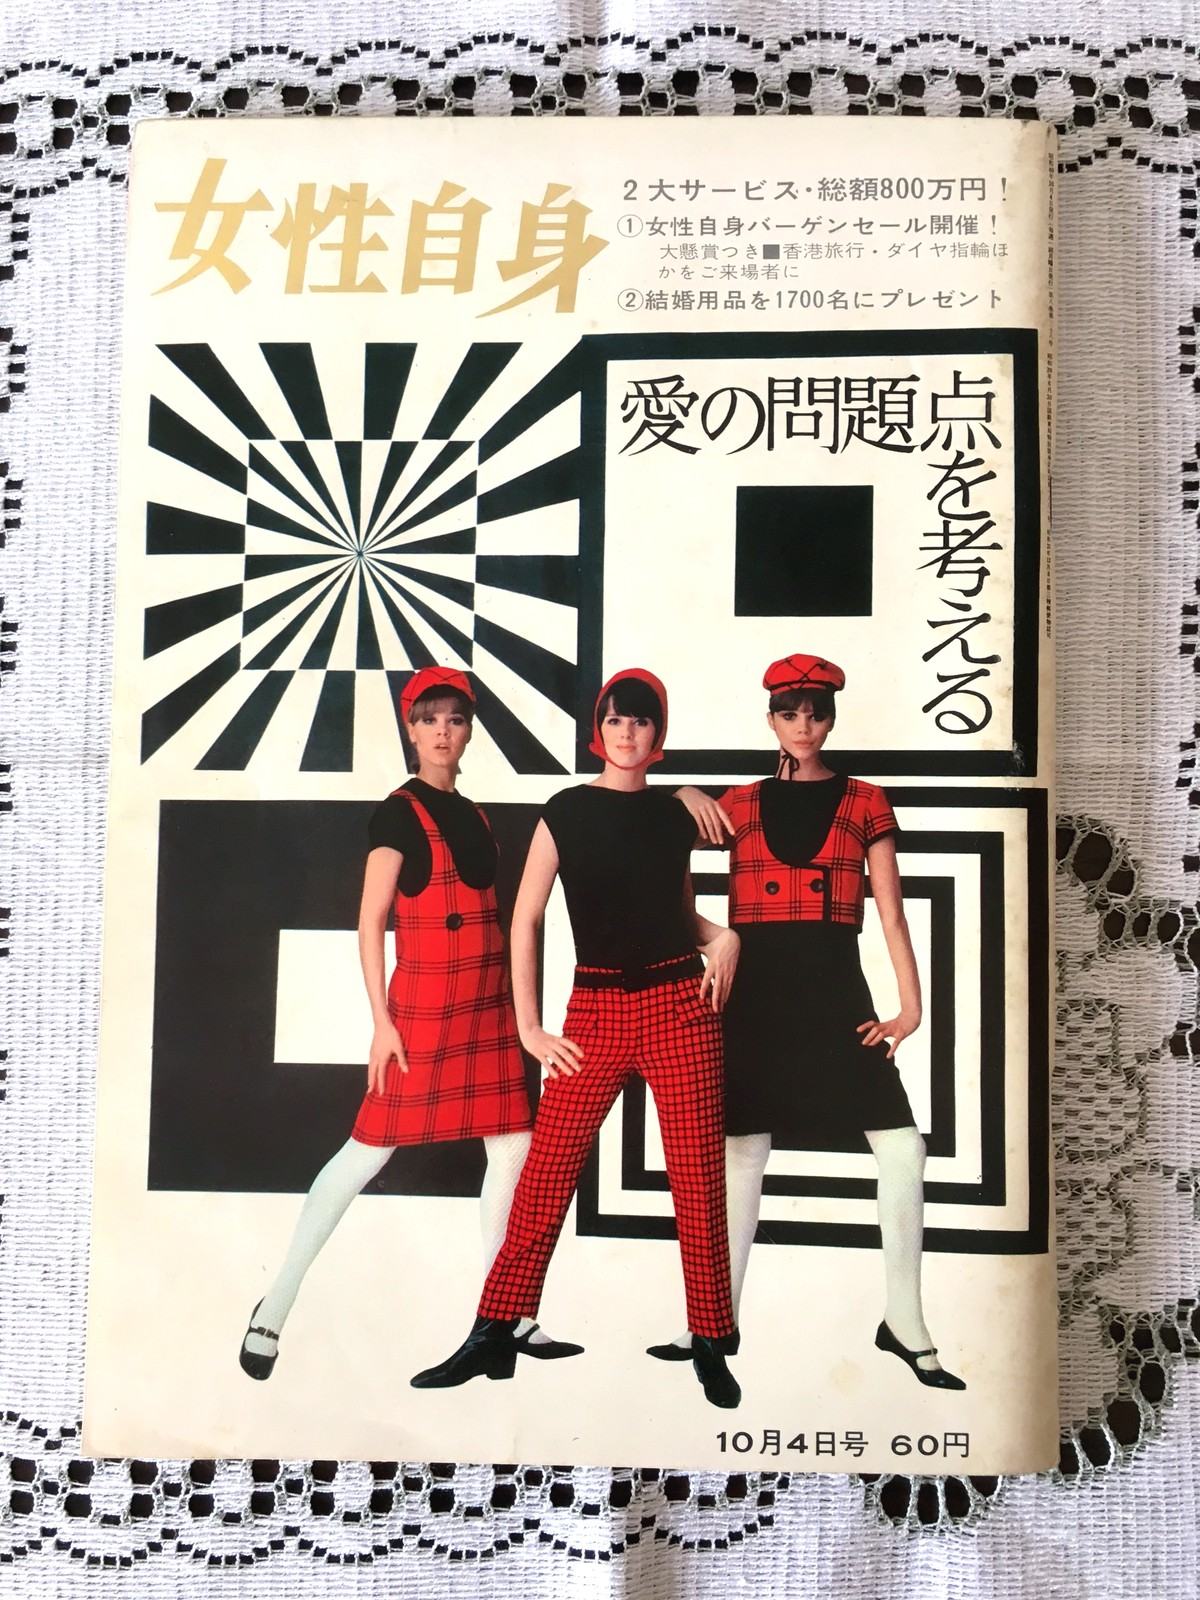 昭和レトロ 雑誌 女性自身 レトロ雑貨 チェリッシュ